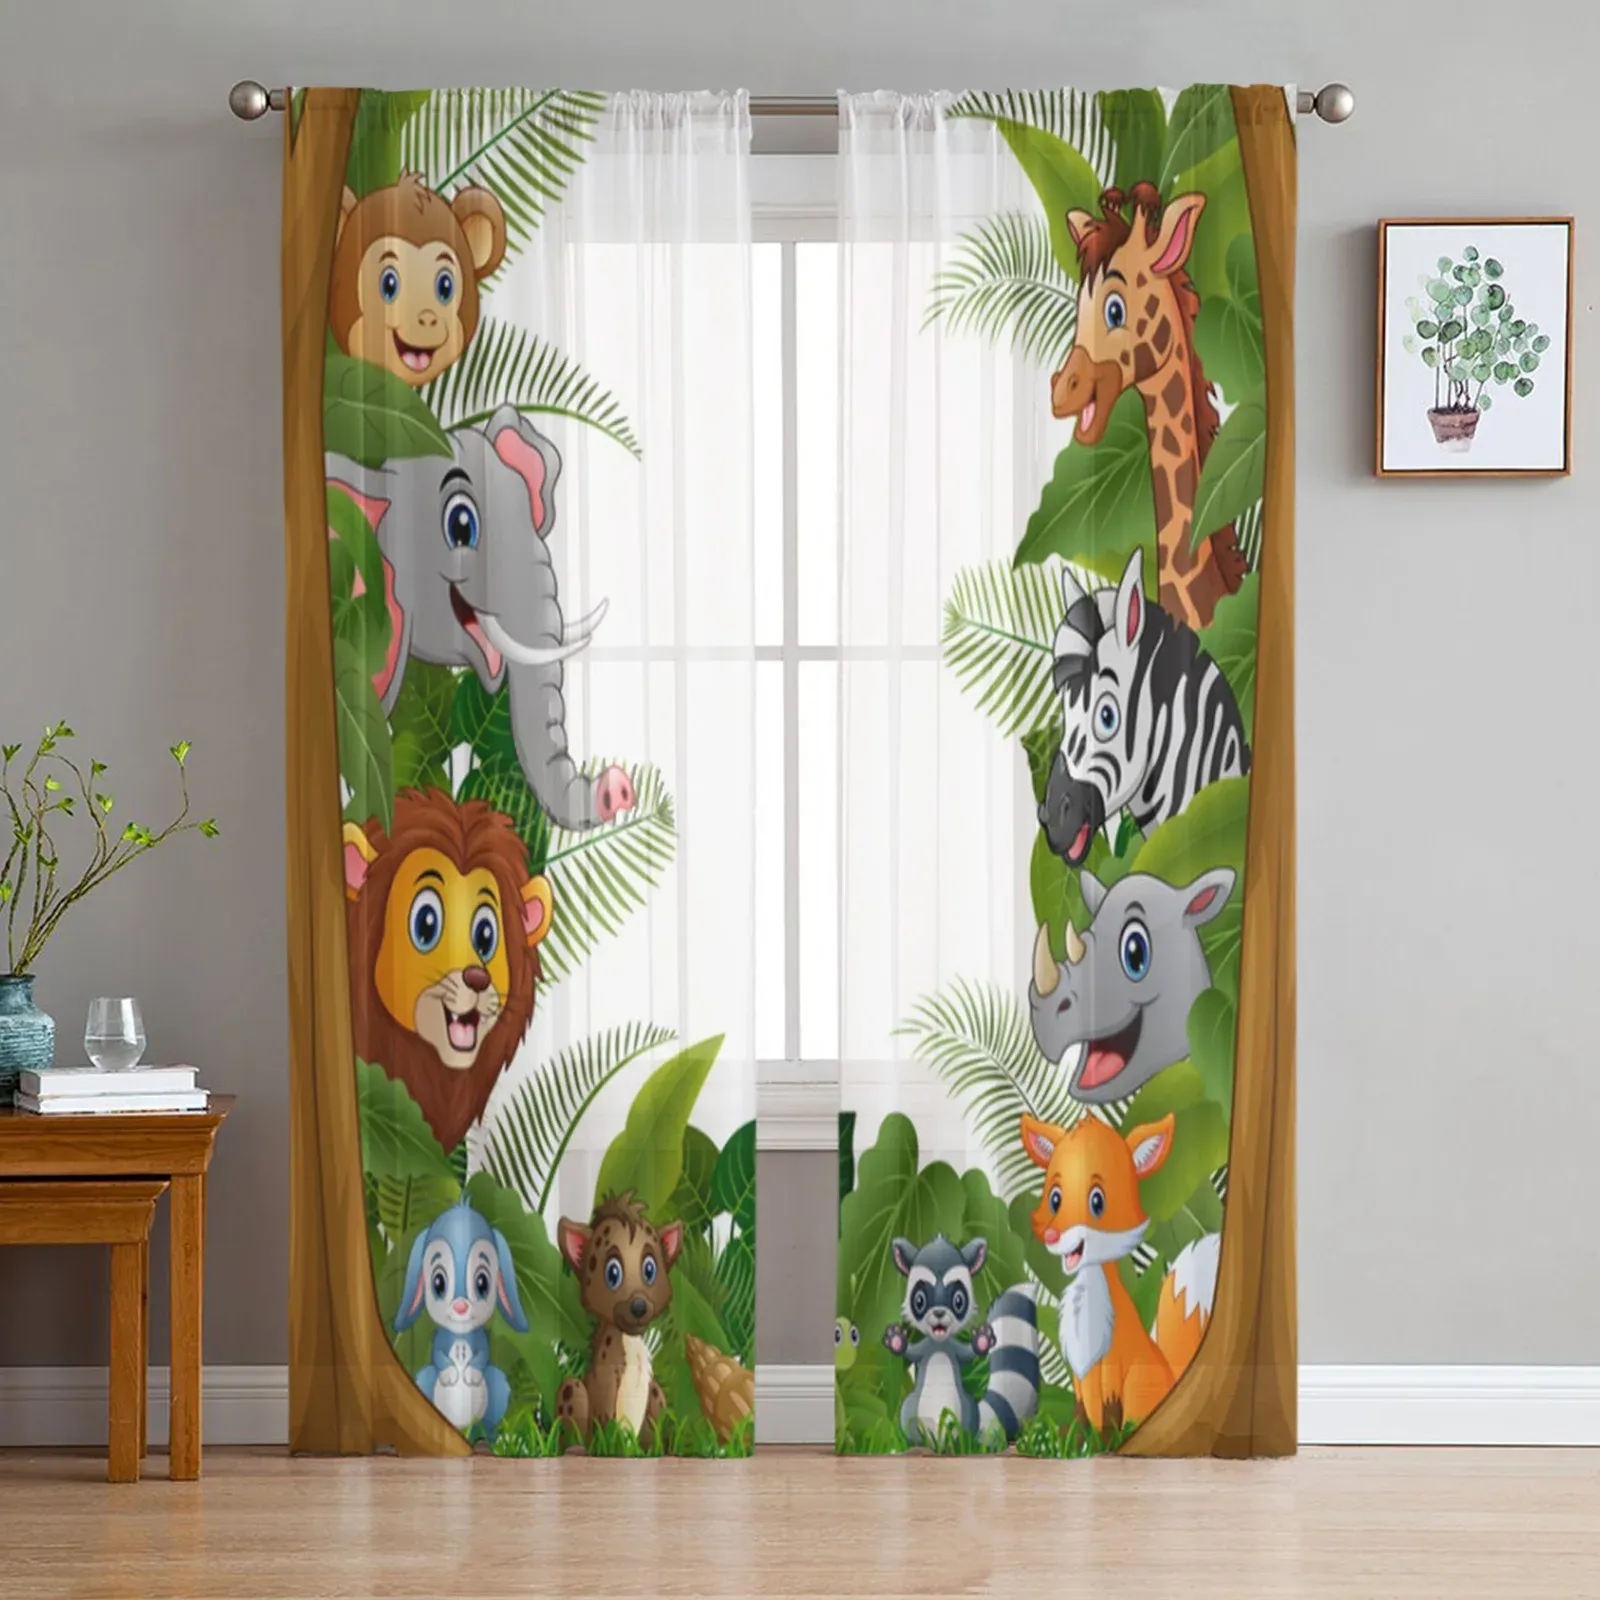 Шторы с изображением джунглей, животных, льва, зебры, прозрачные шторы для гостиной, детской спальни, тюлевые шторы, кухонные оконные панели, панели